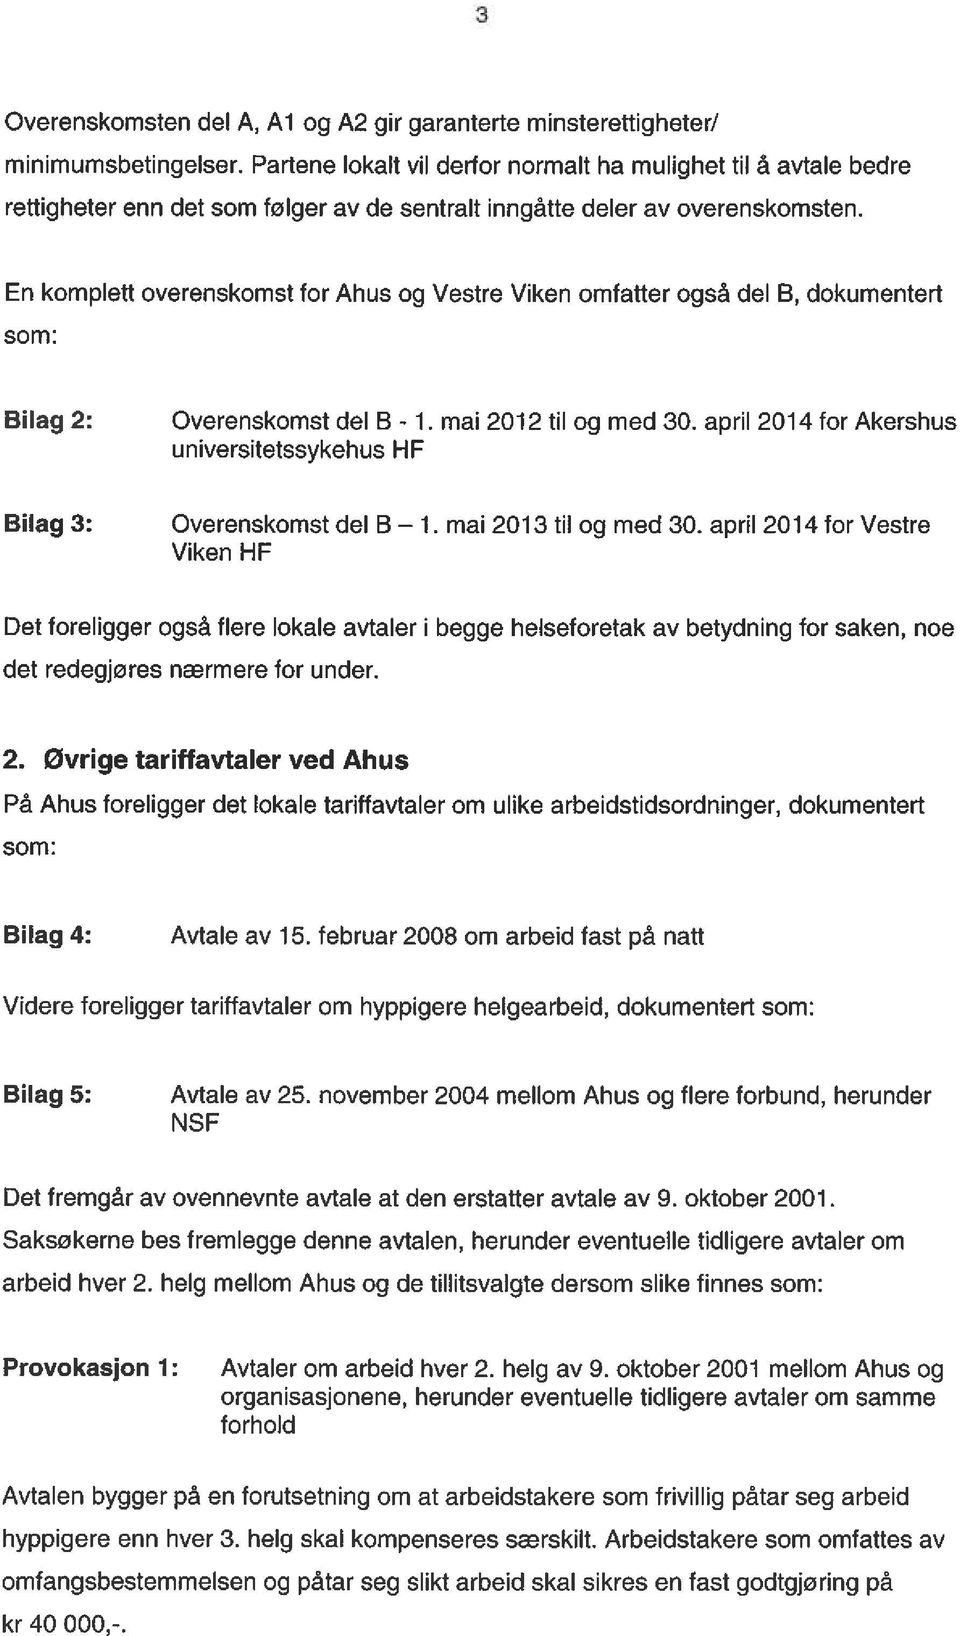 En komplett overenskomst for Ahus og Vestre Viken omfatter også del B, dokumentert som: Bilag 2: Bilag 3: Overenskomst del B - 1. mai 2012 til og med 30.